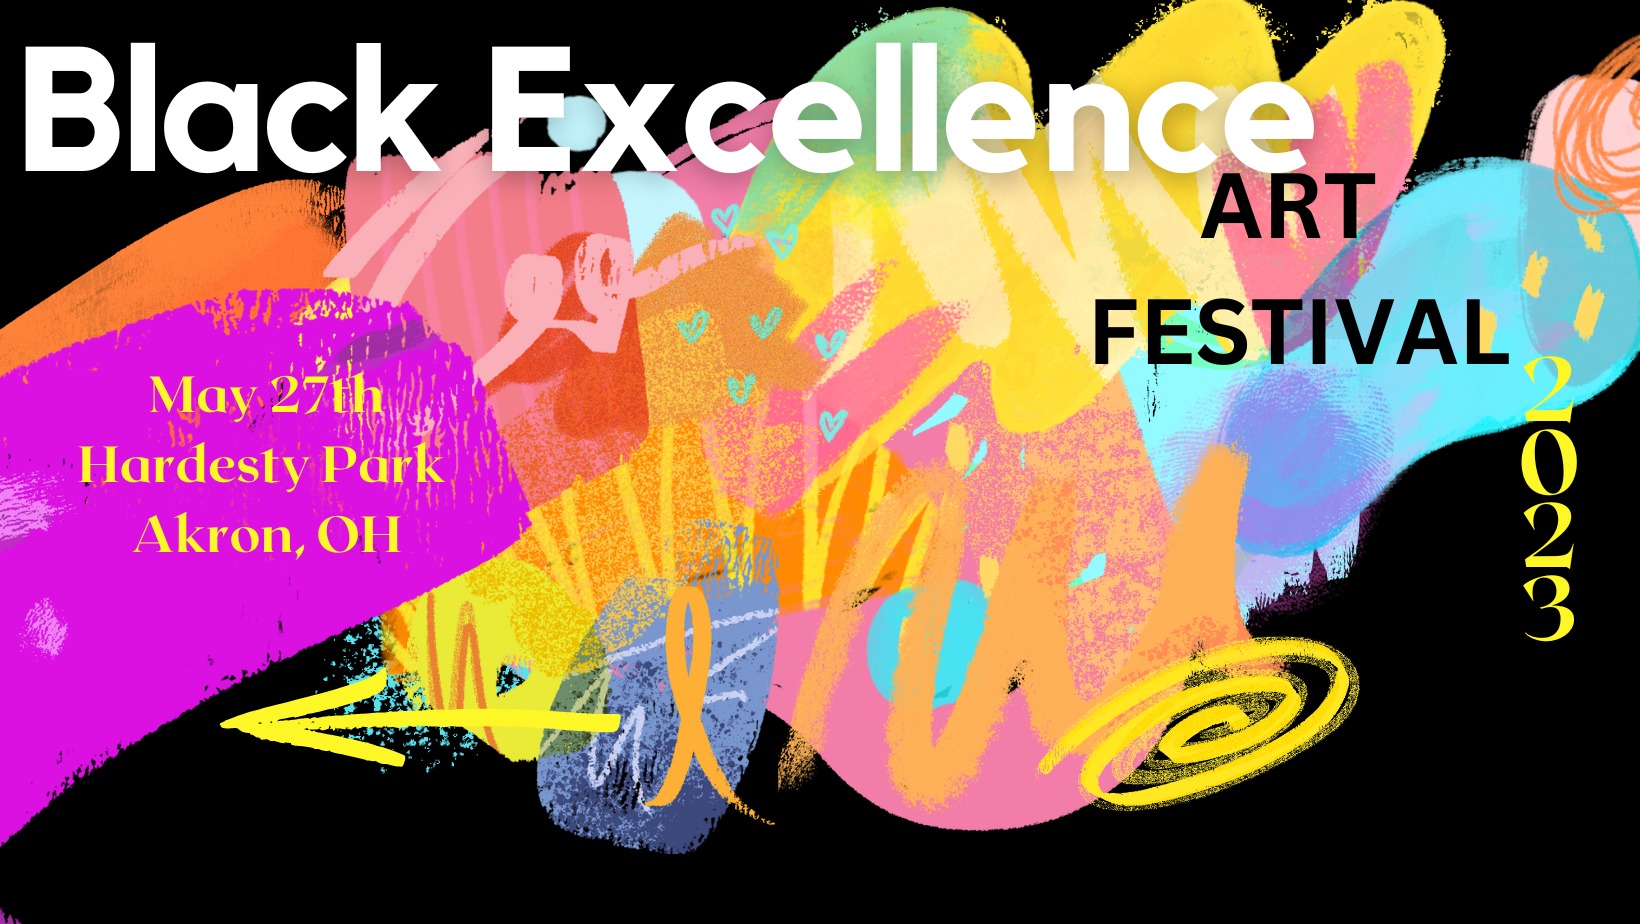 Black Excellence Art Festival